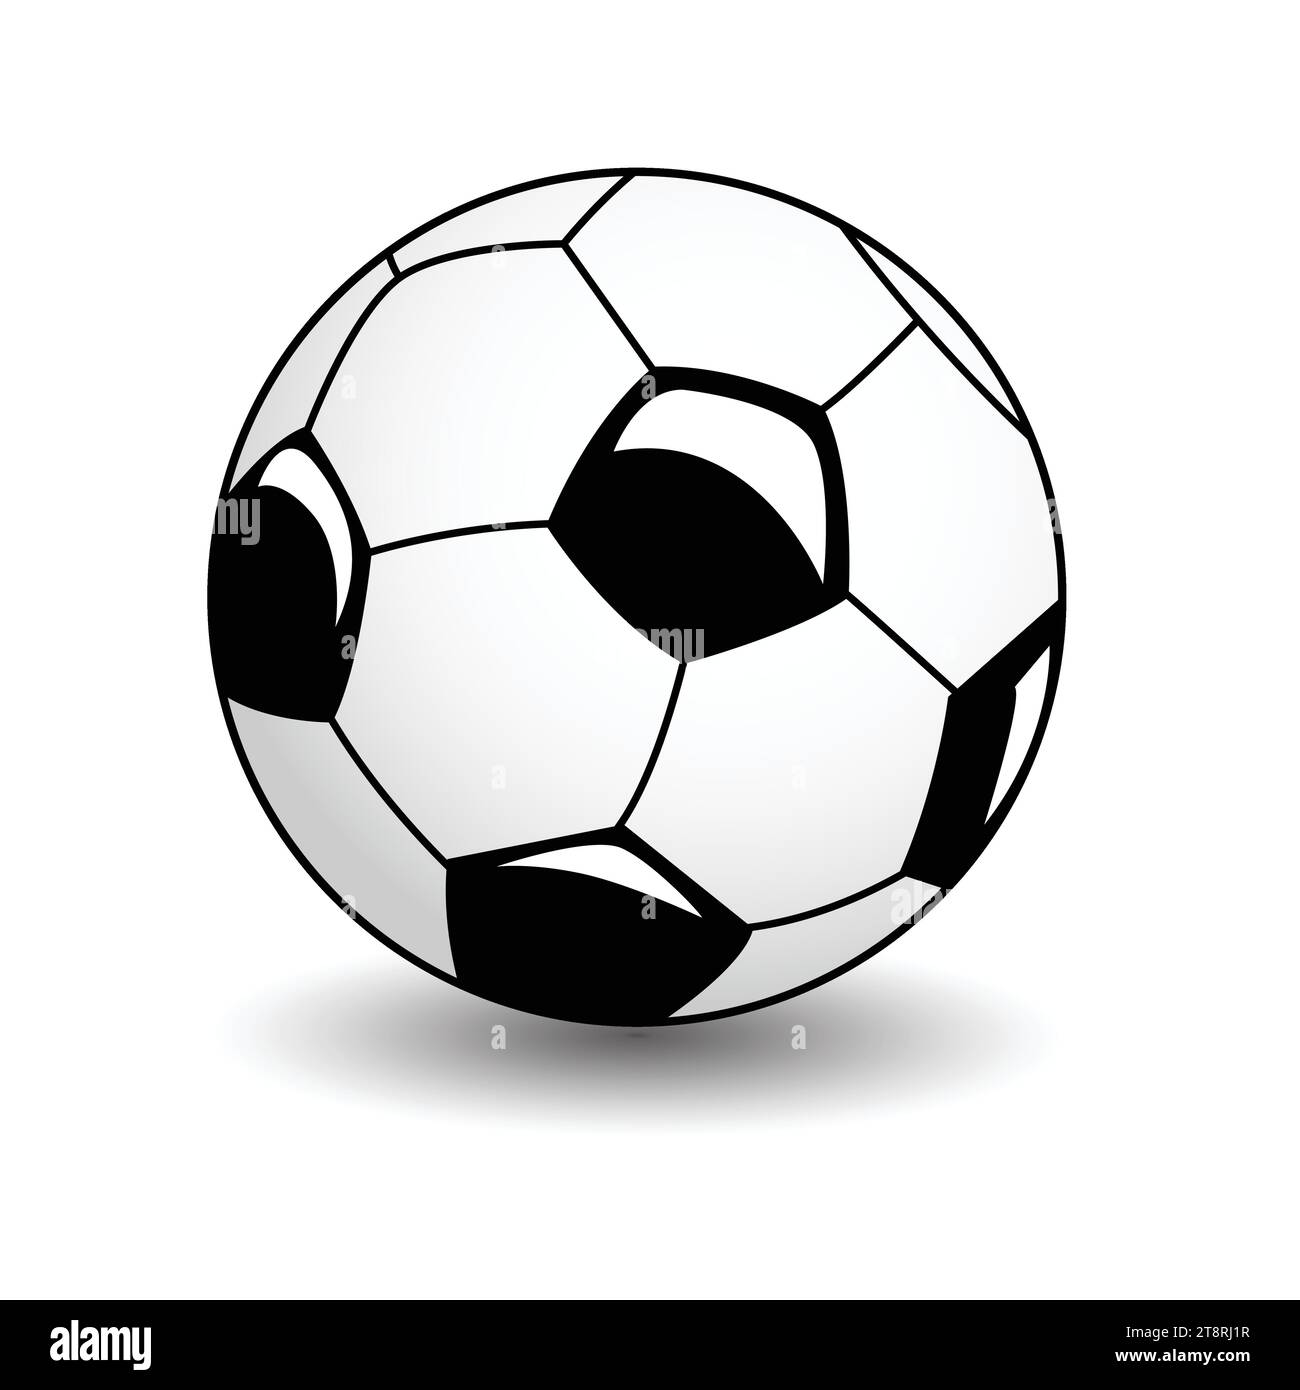 Football logo design vector icon template Stock Vector